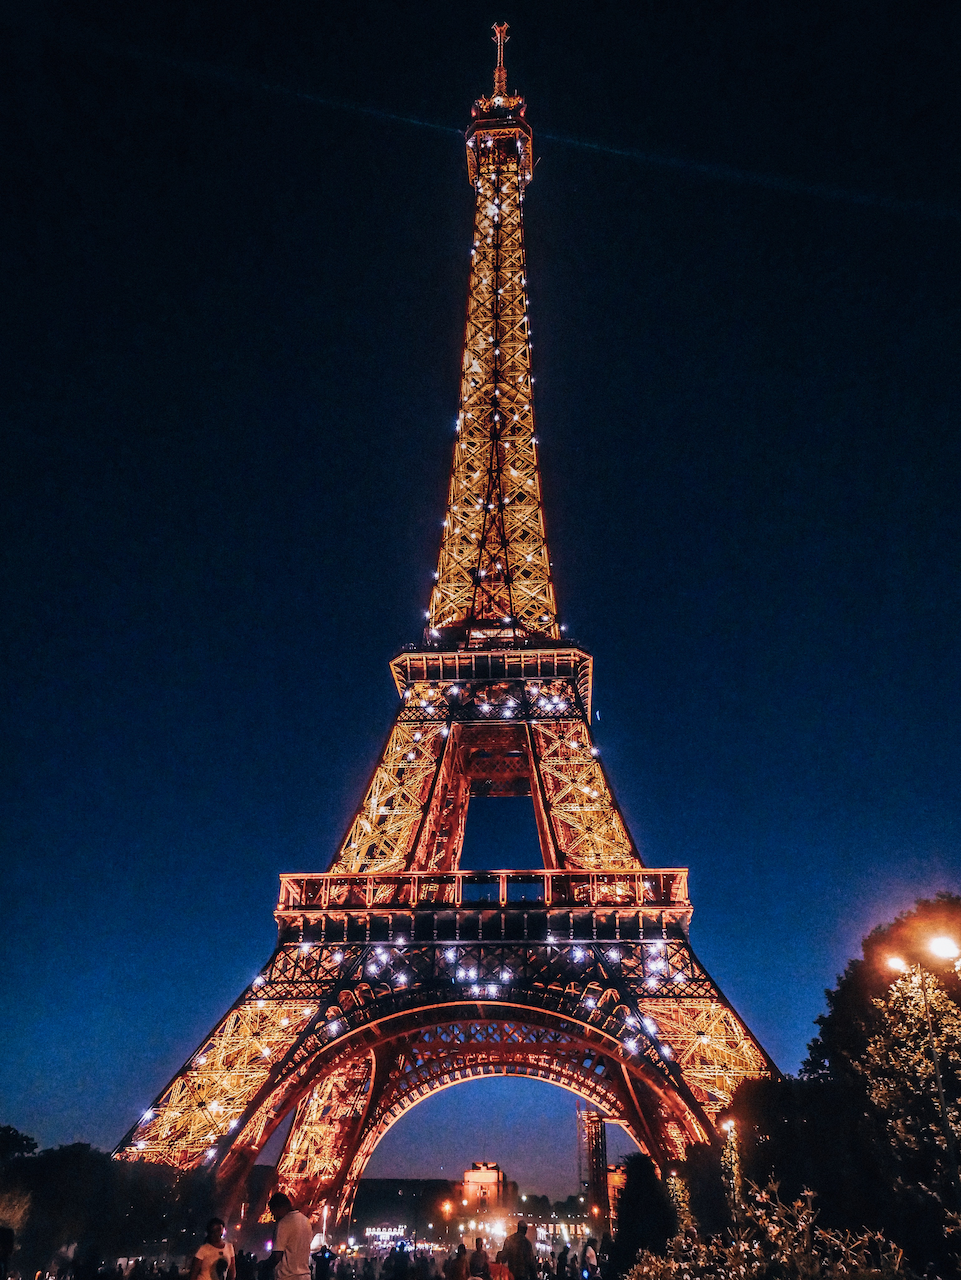 La tour Eiffel scintillante la nuit - Paris - France